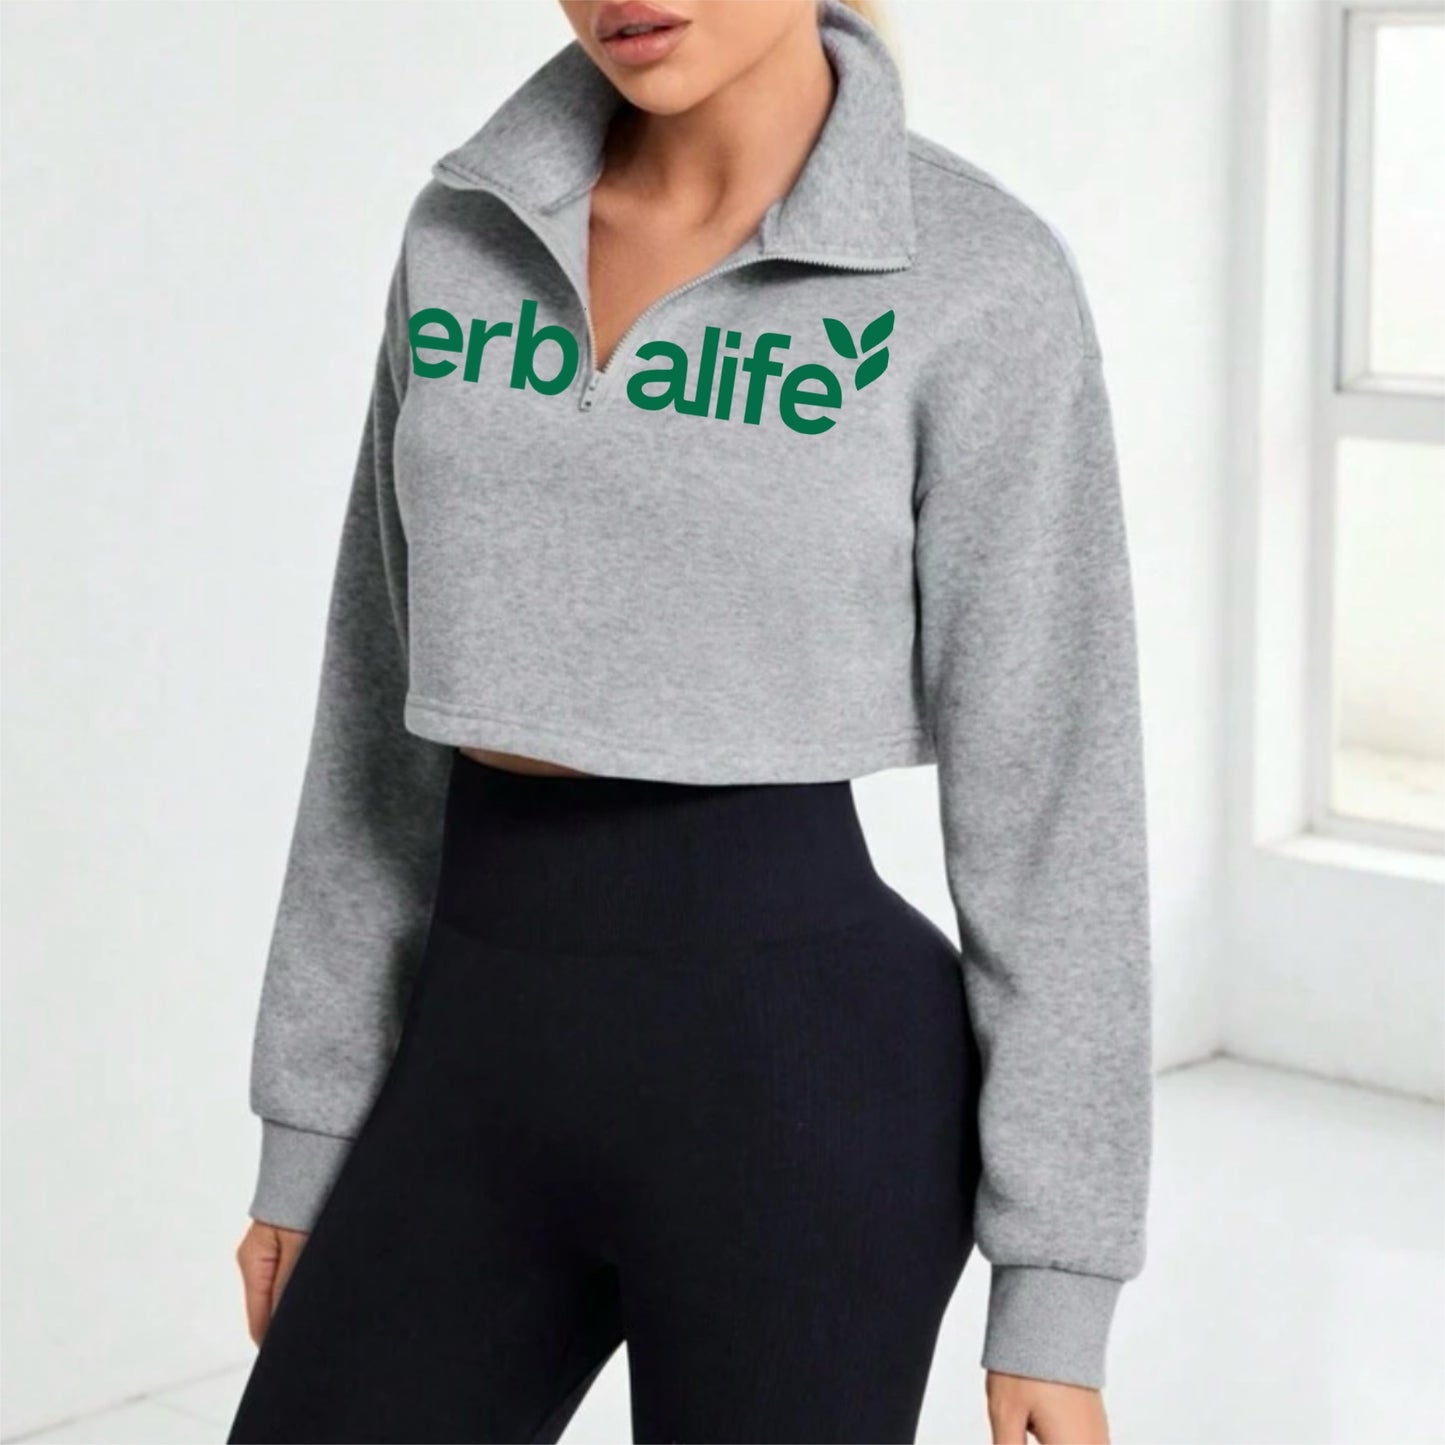 Women's Half Zip Fleece
Sweatshirt Grey